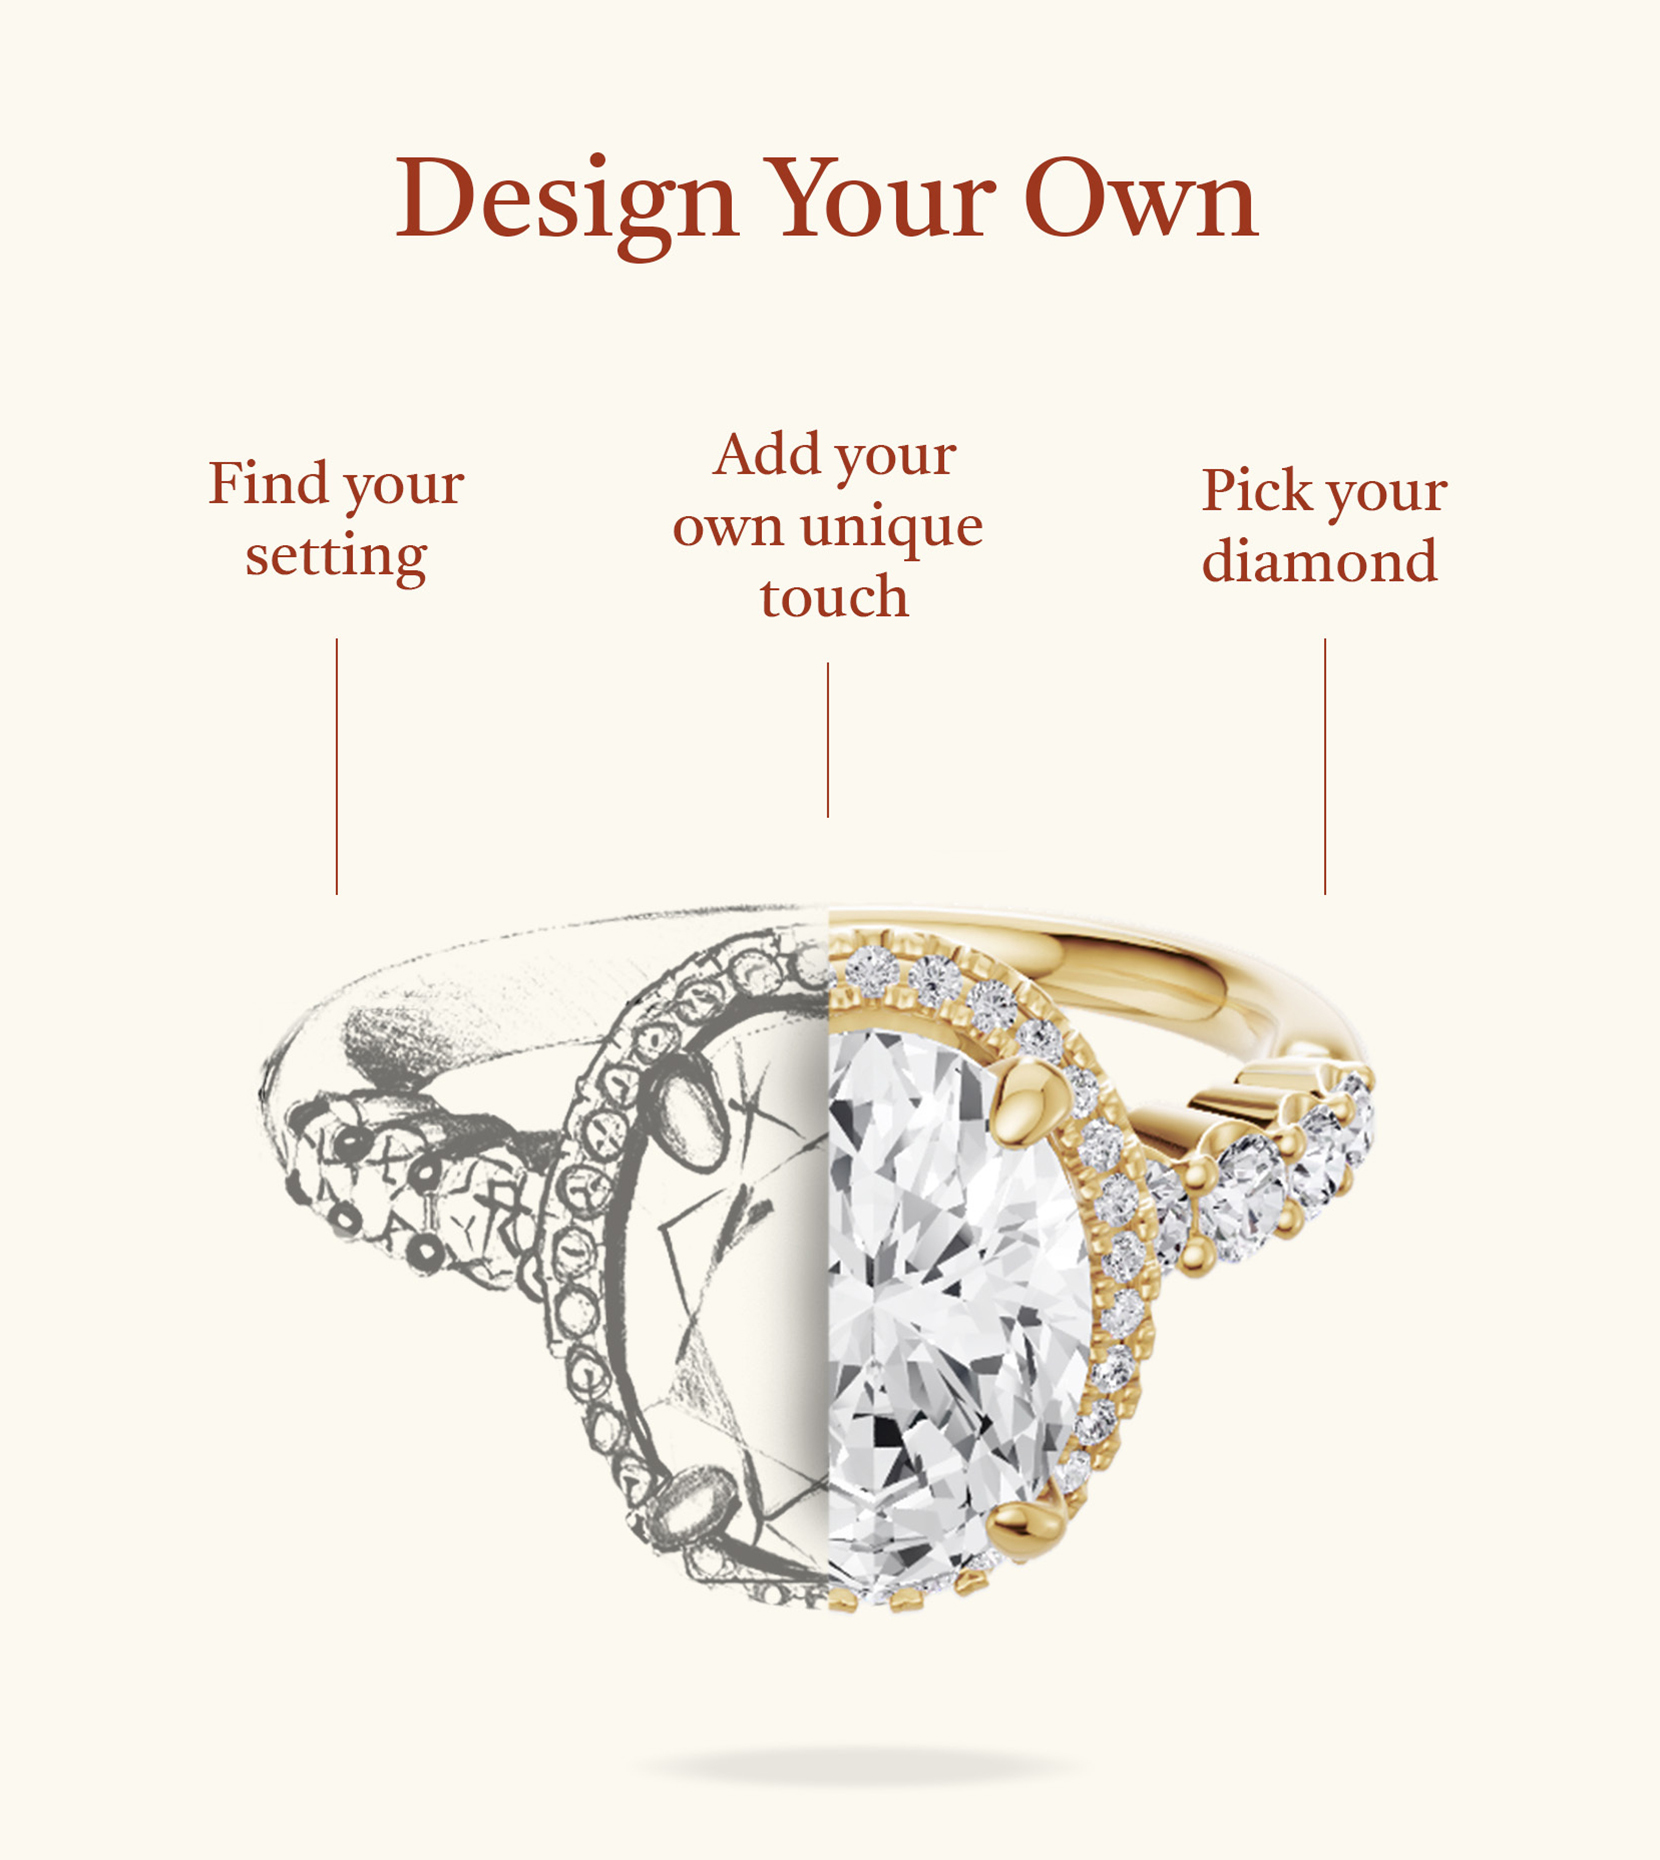 Une image démontrant la flexibilité de sélectionner votre type de diamant préféré et la monture de votre bague de fiançailles pour la personnalisation